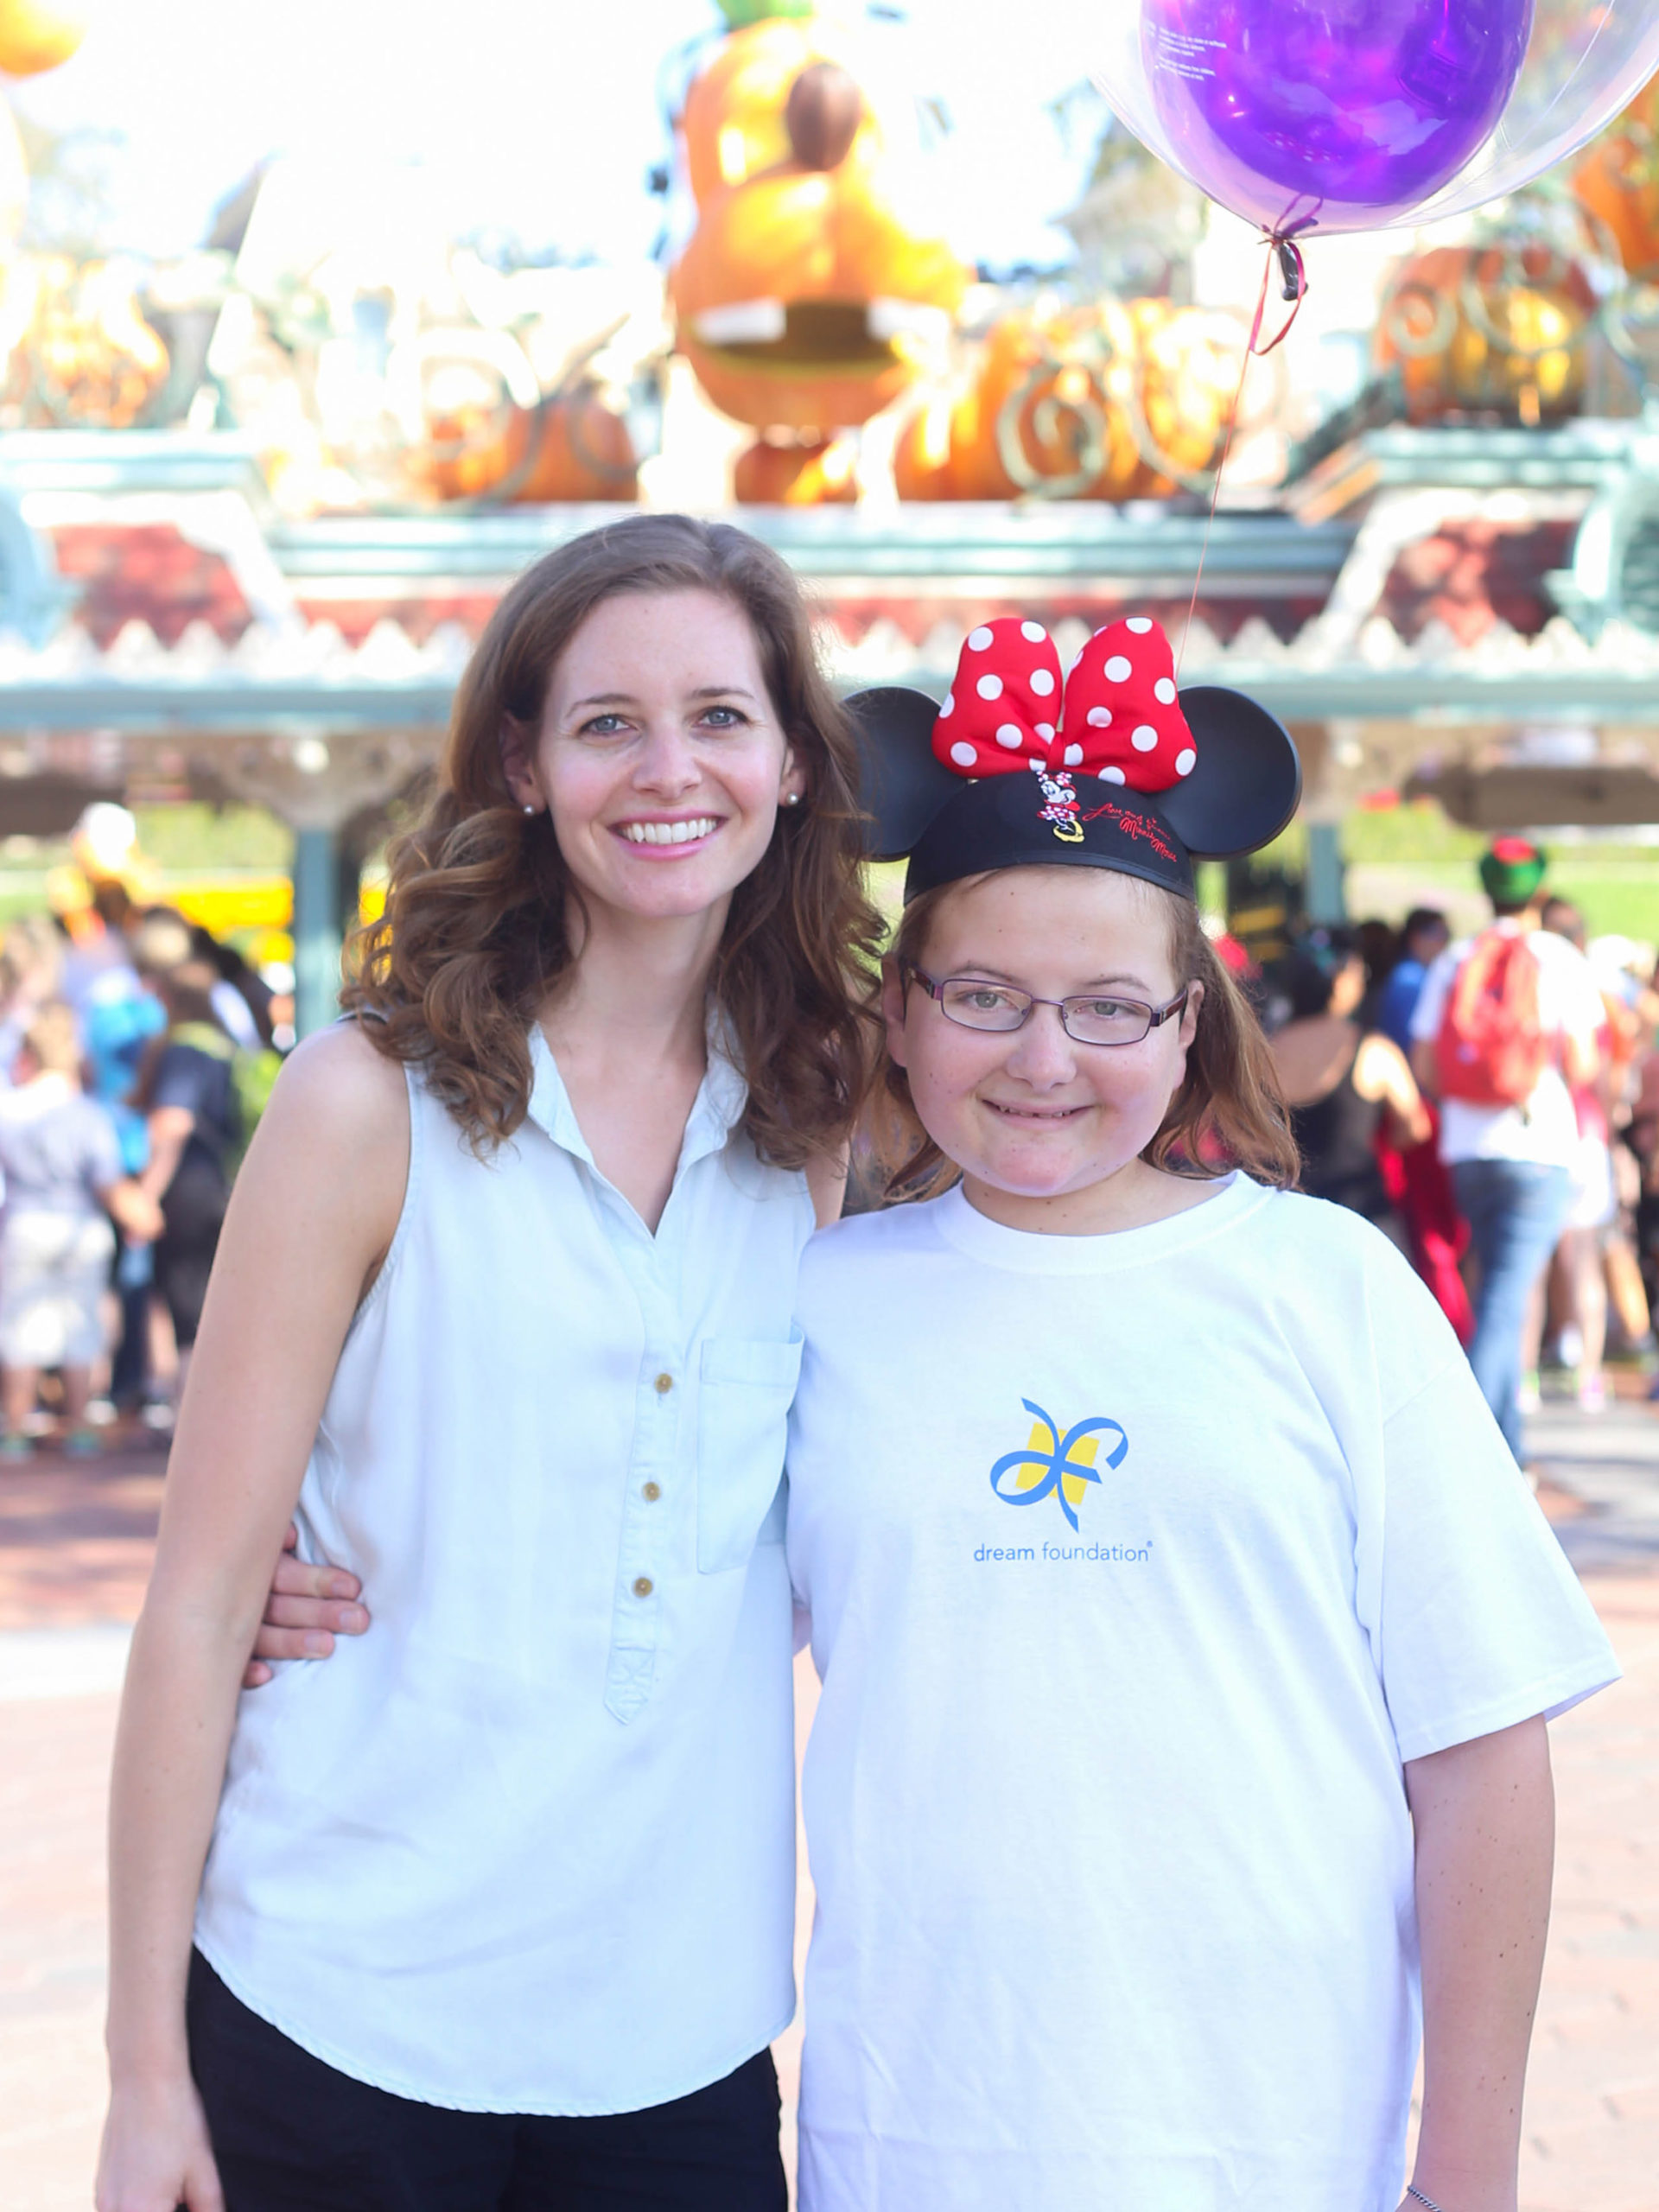 CHOC hematology/oncology nurse Emily posing with her sister Amanda at Disneyland